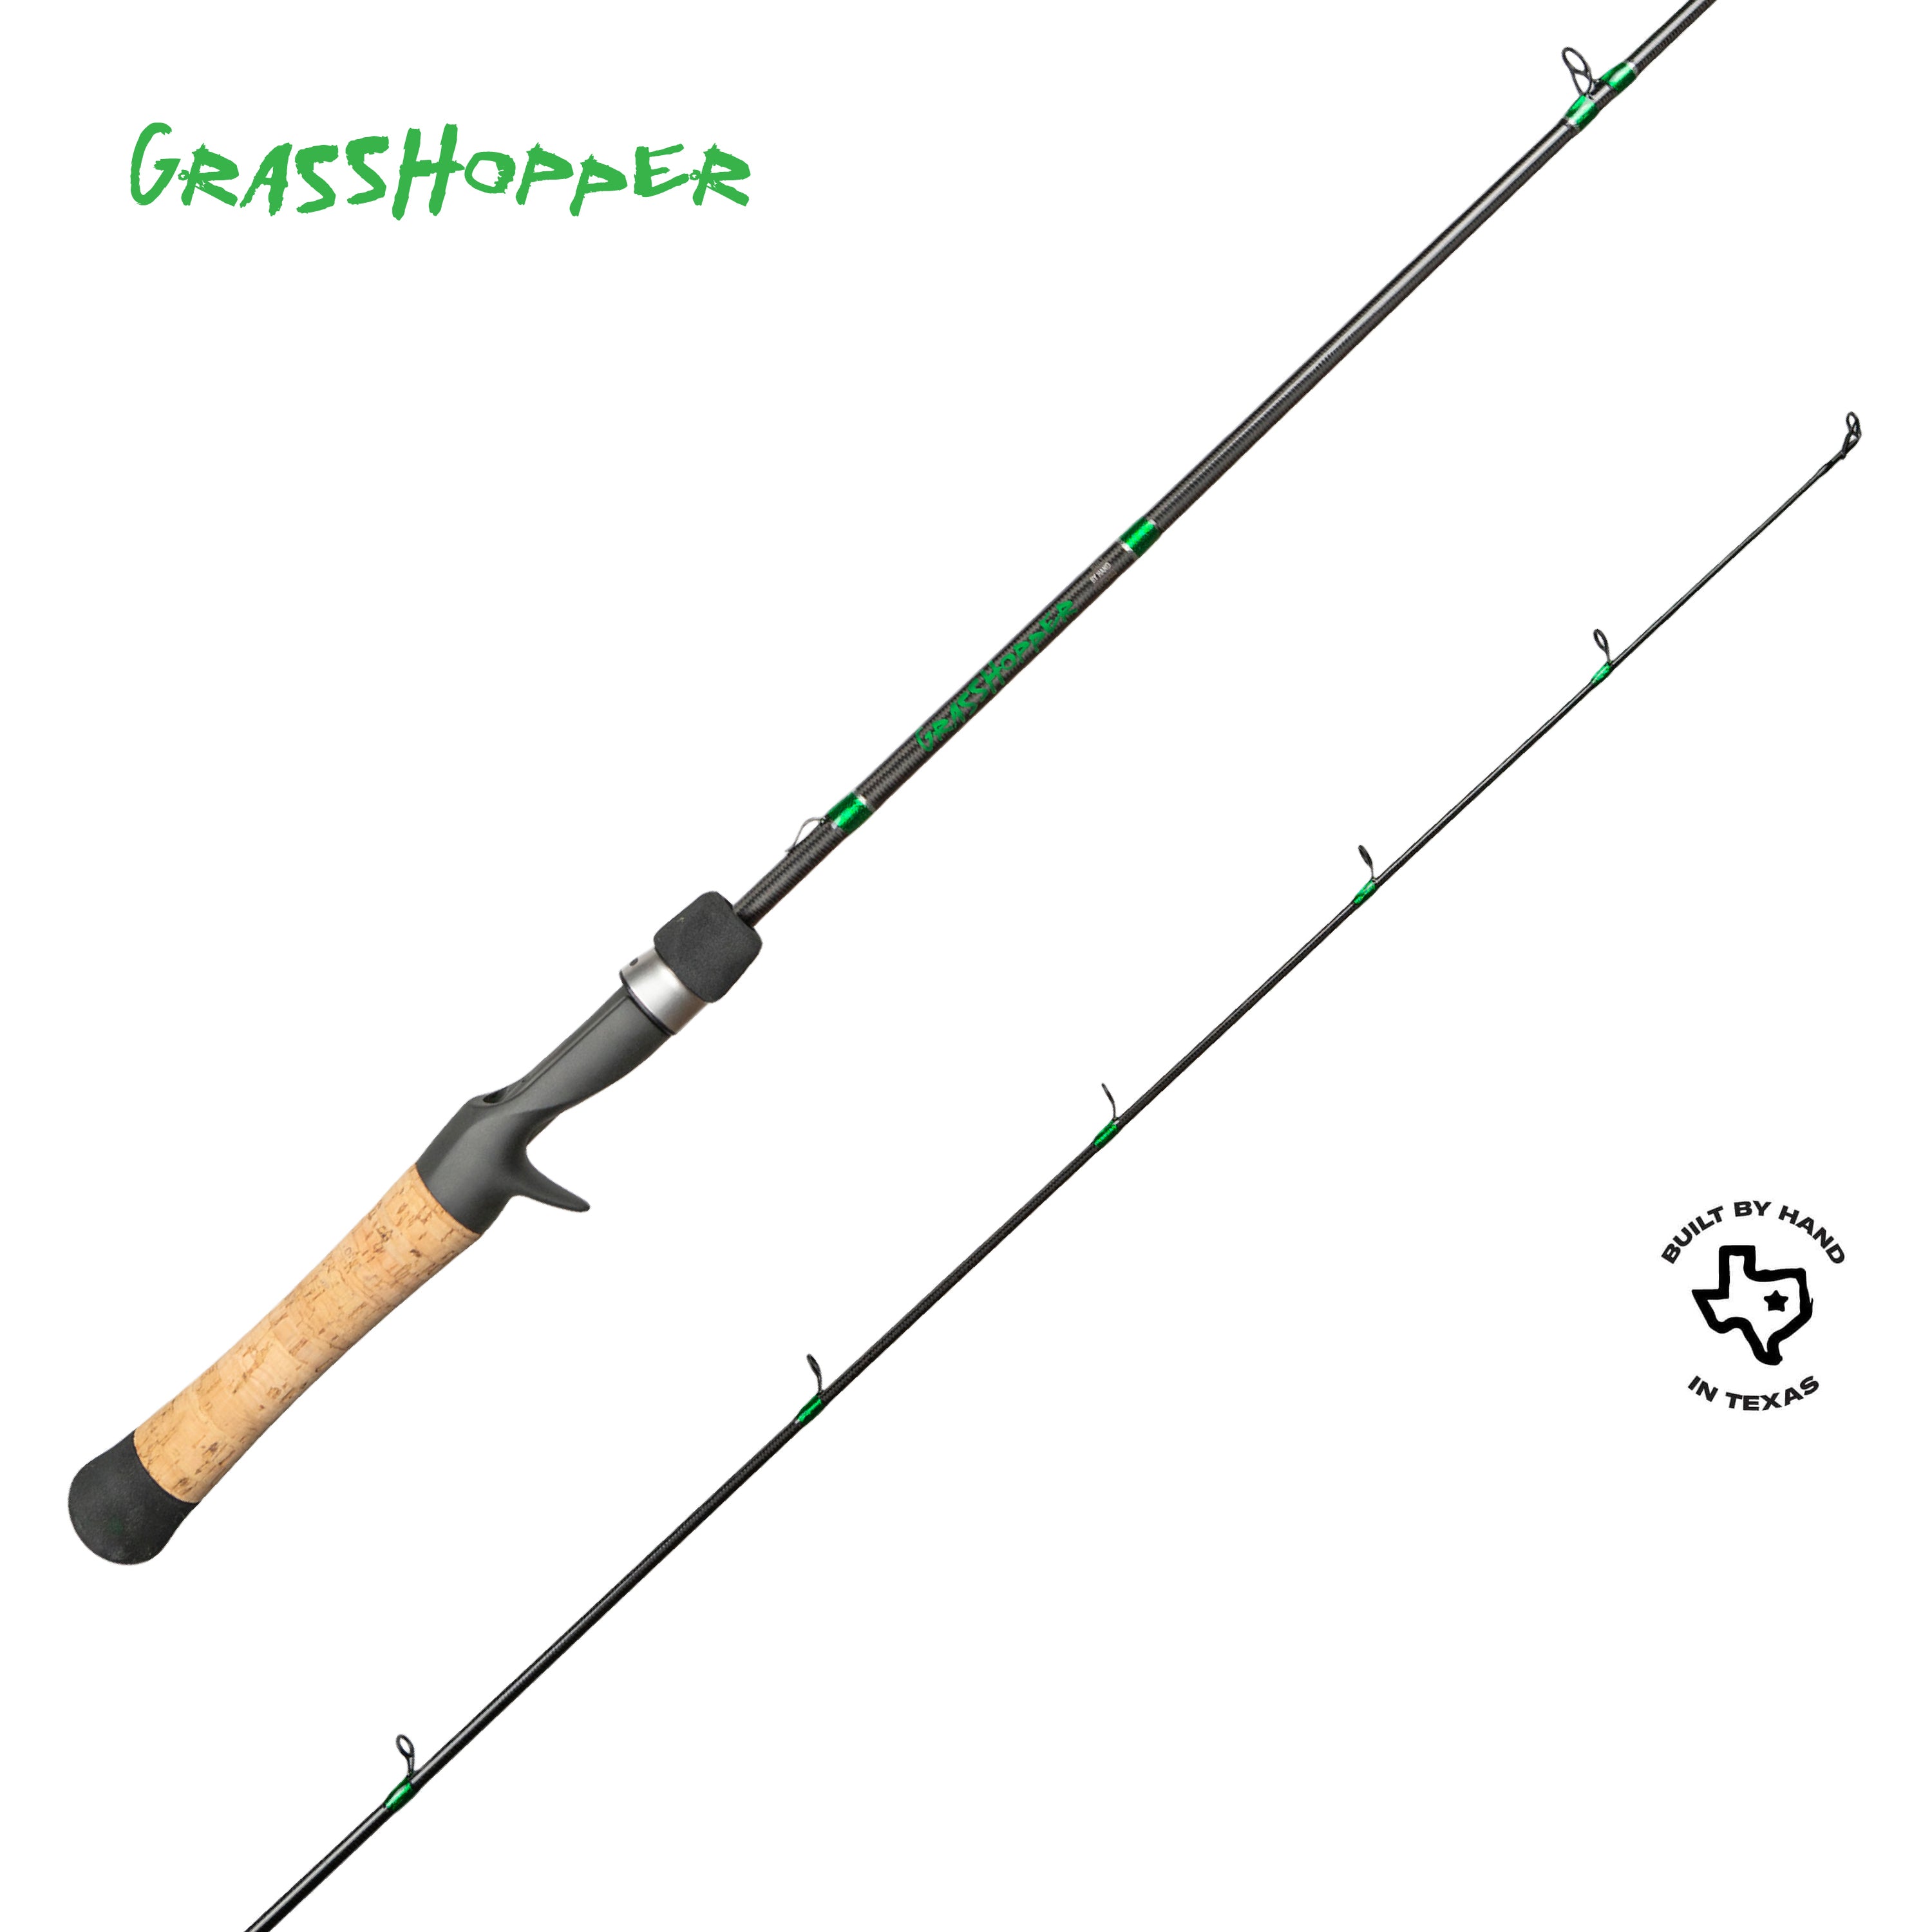 Grasshopper Fishing Rod – KISTLER Fishing